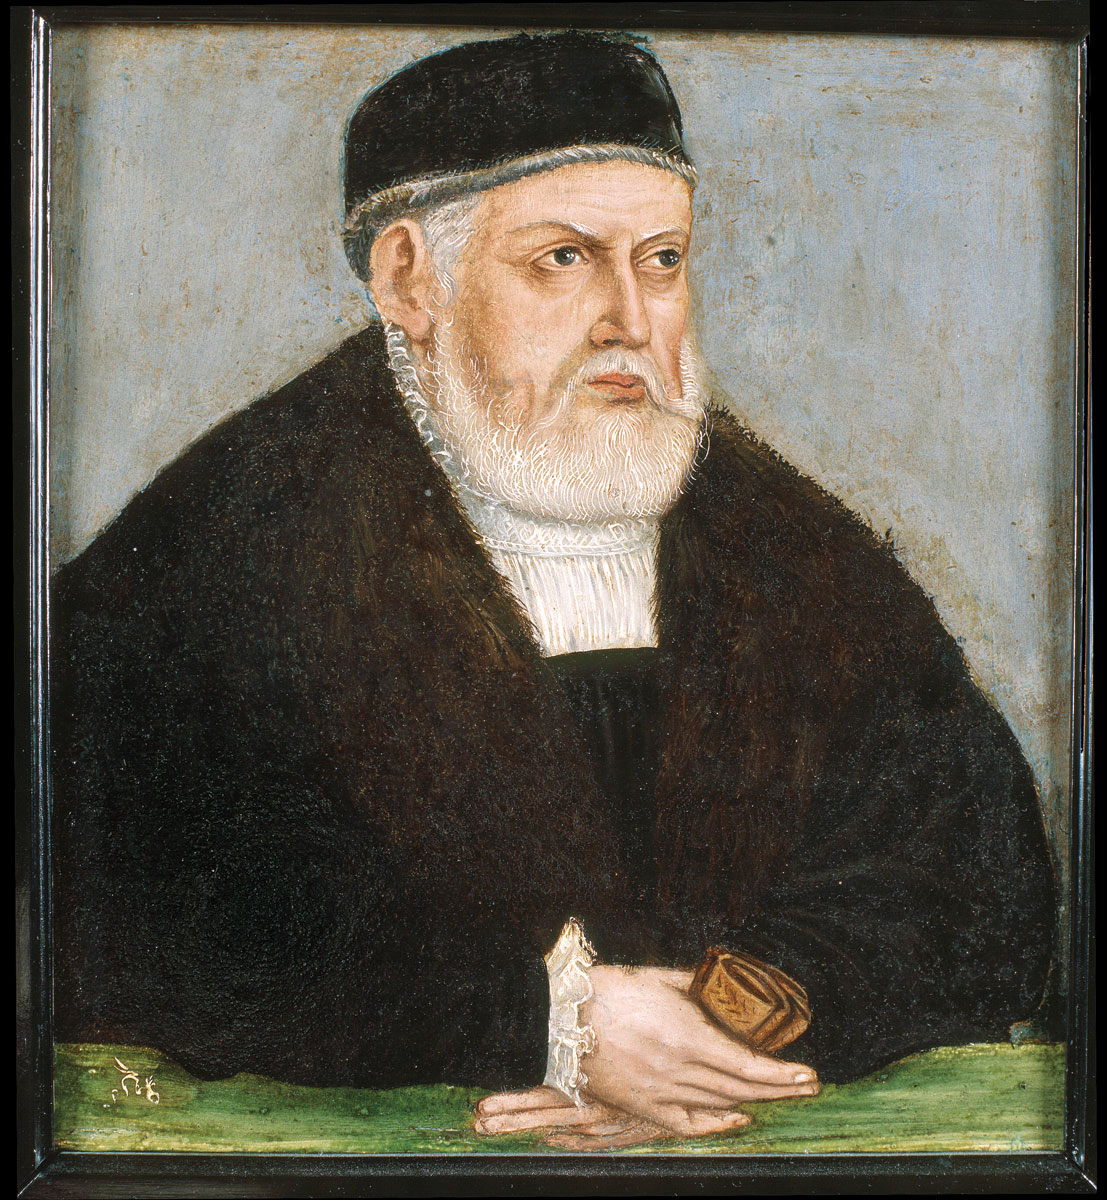 Lenkijos karalius ir Lietuvos didysis kunigaikštis Žygimantas I Senasis. Apie 1553–1556. Luko Kranacho jaunesniojo dirbtuvės. FCzart